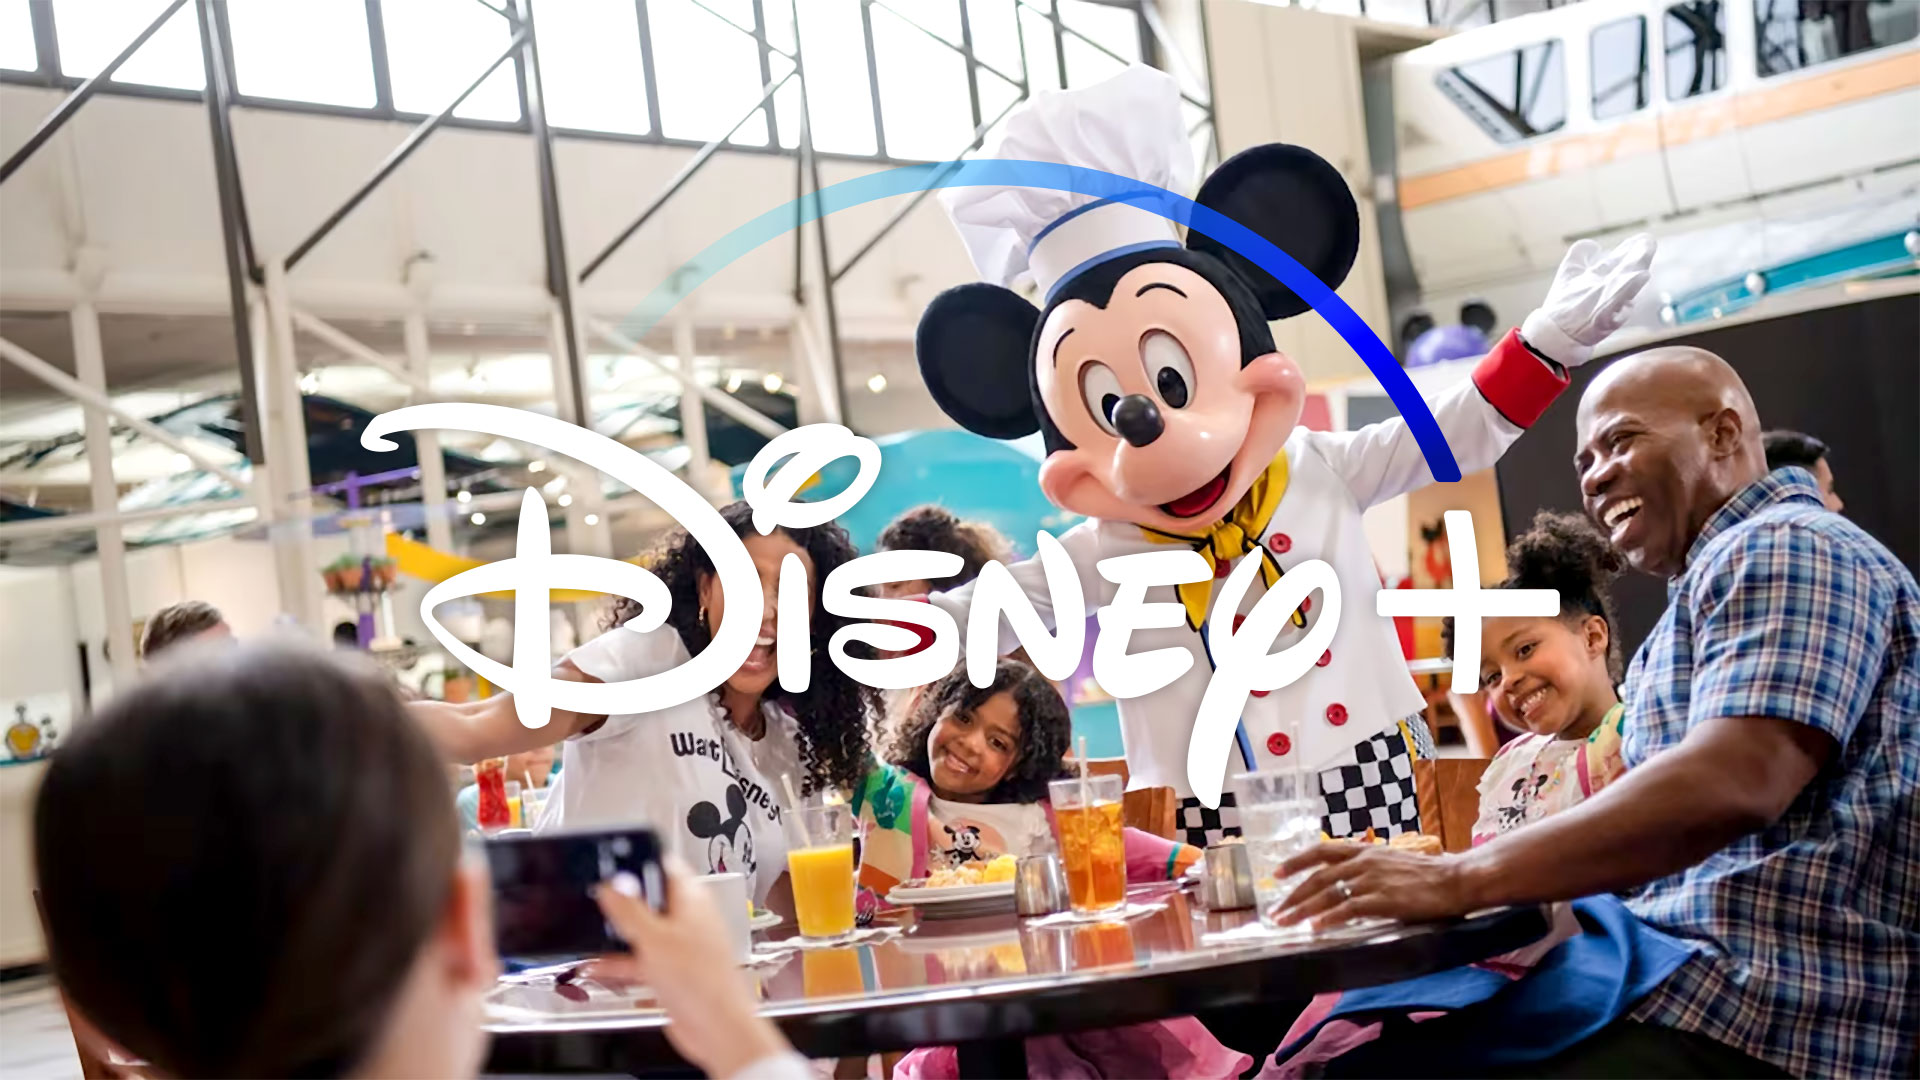 Come gratis en Walt Disney World con Disney+